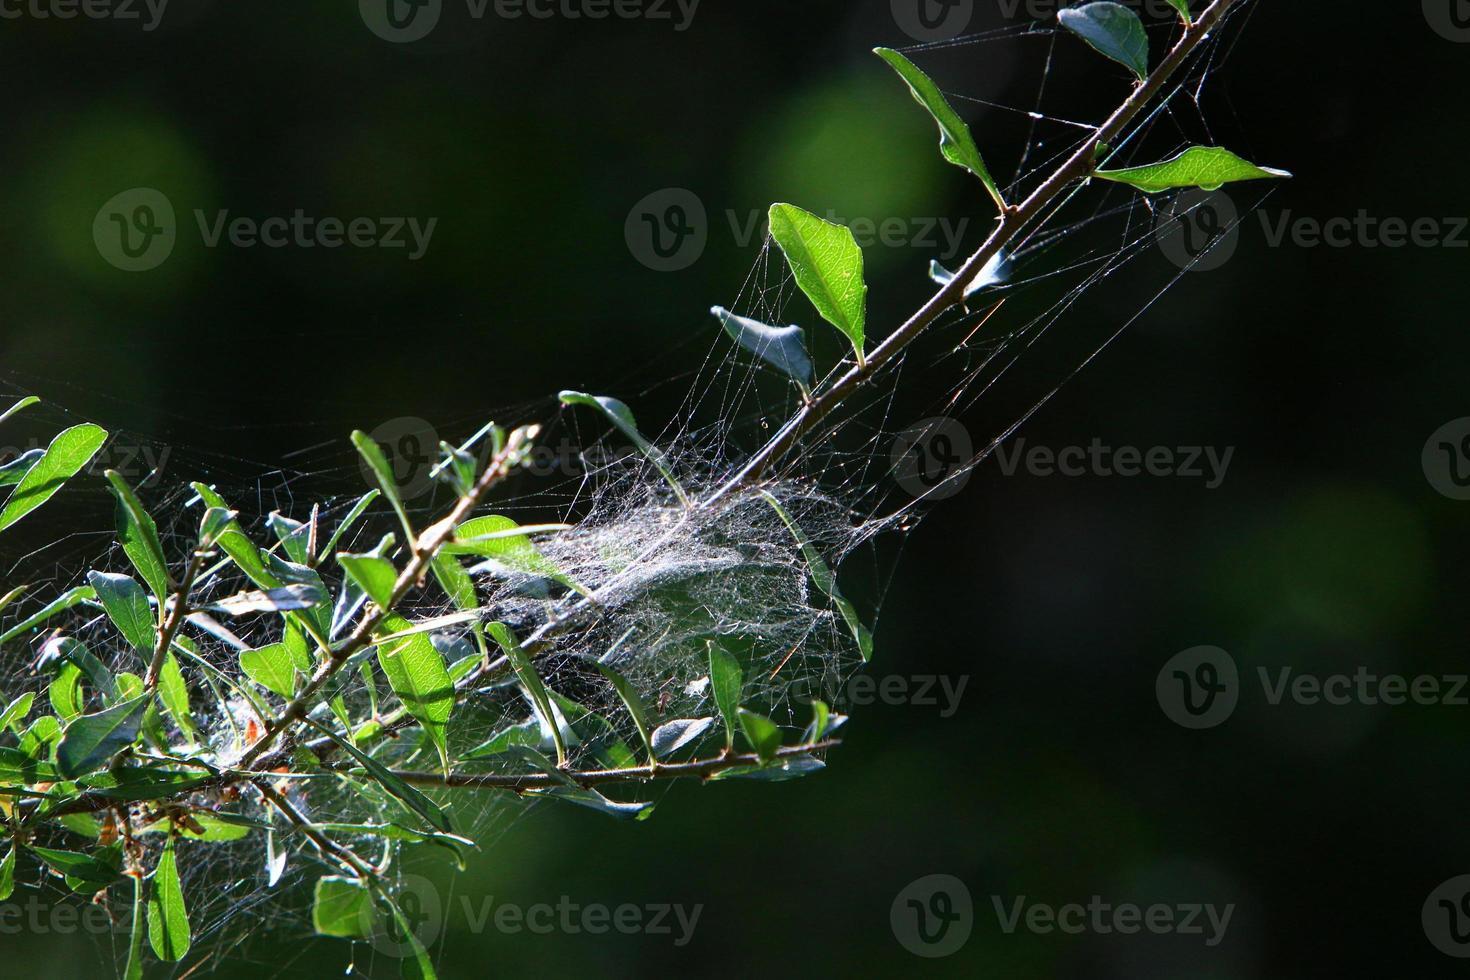 en las ramas y hojas de los árboles telas de araña de hilos delgados. foto